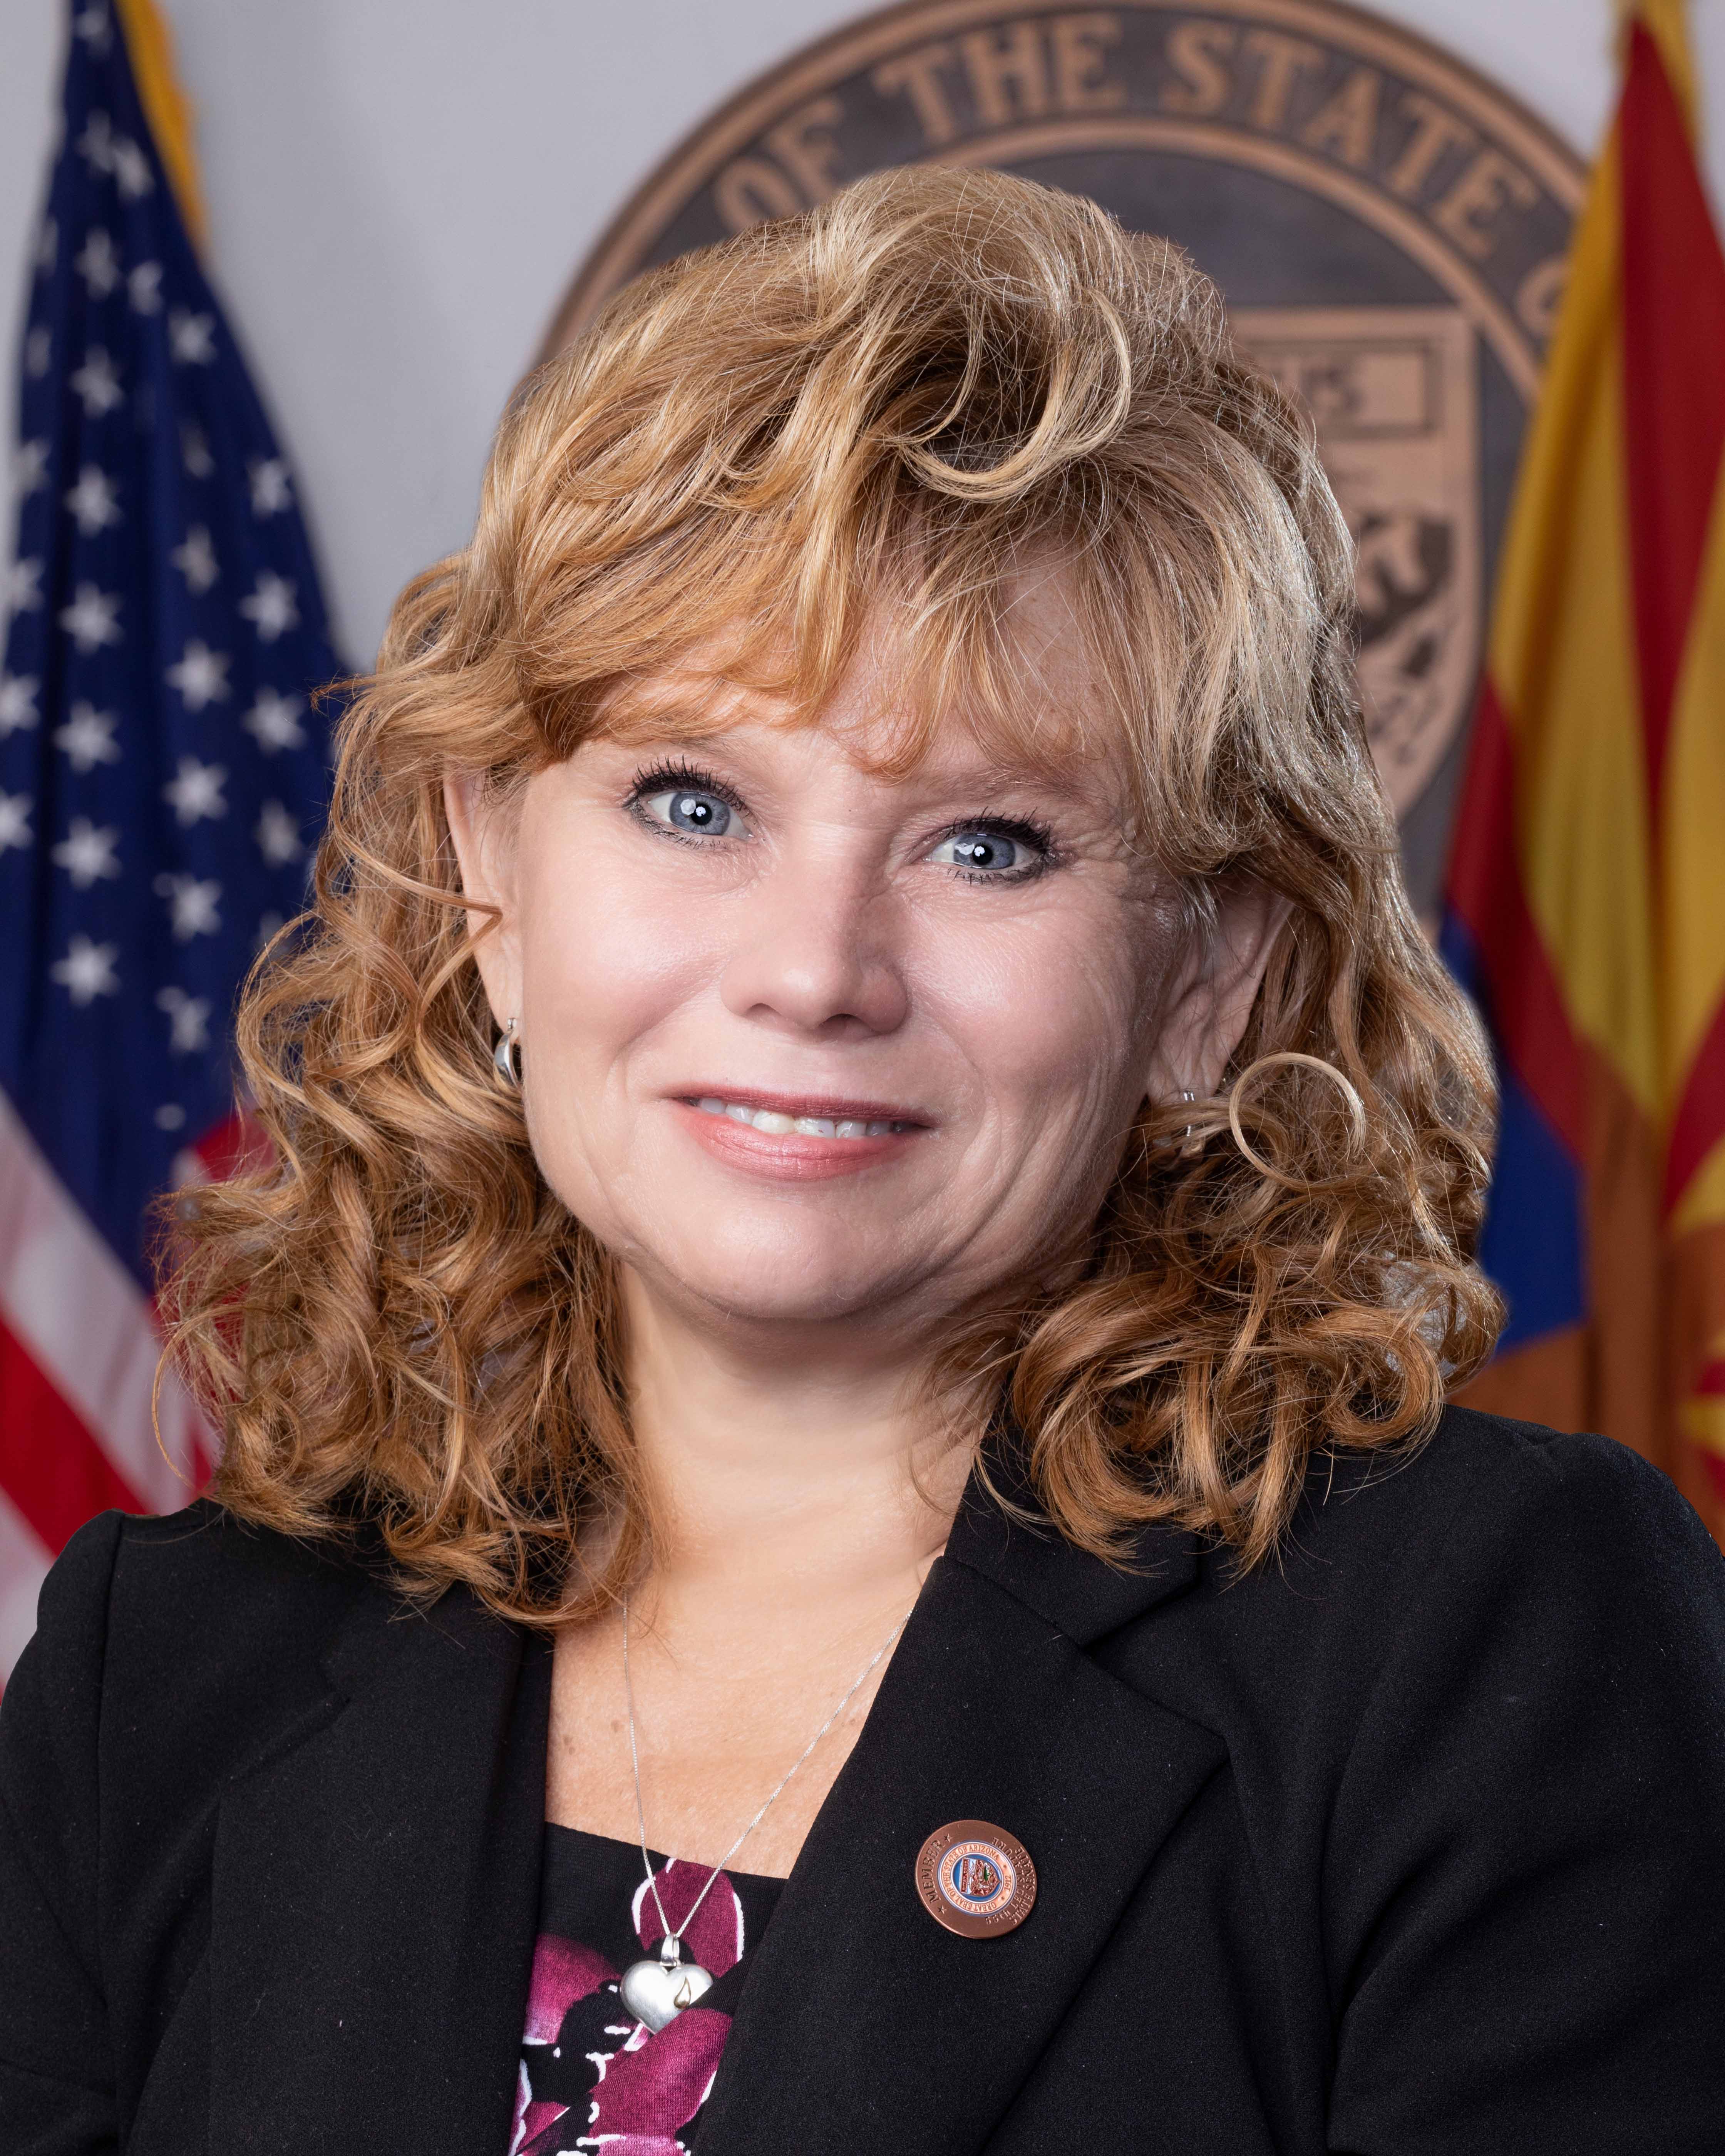 Senator Christine Marsh